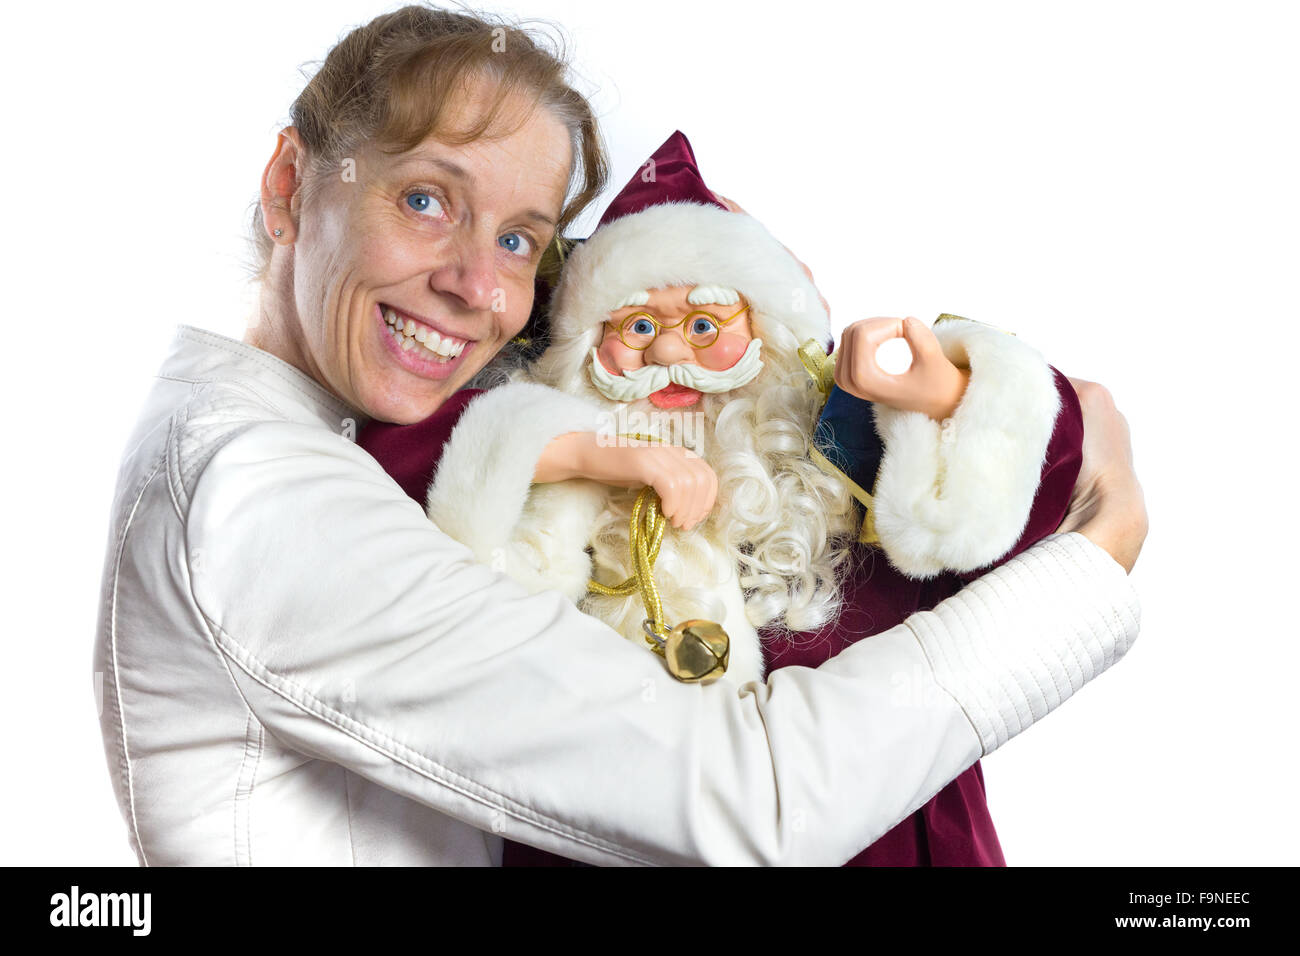 European woman embracing modèle de Père Noël isolé sur fond blanc Banque D'Images